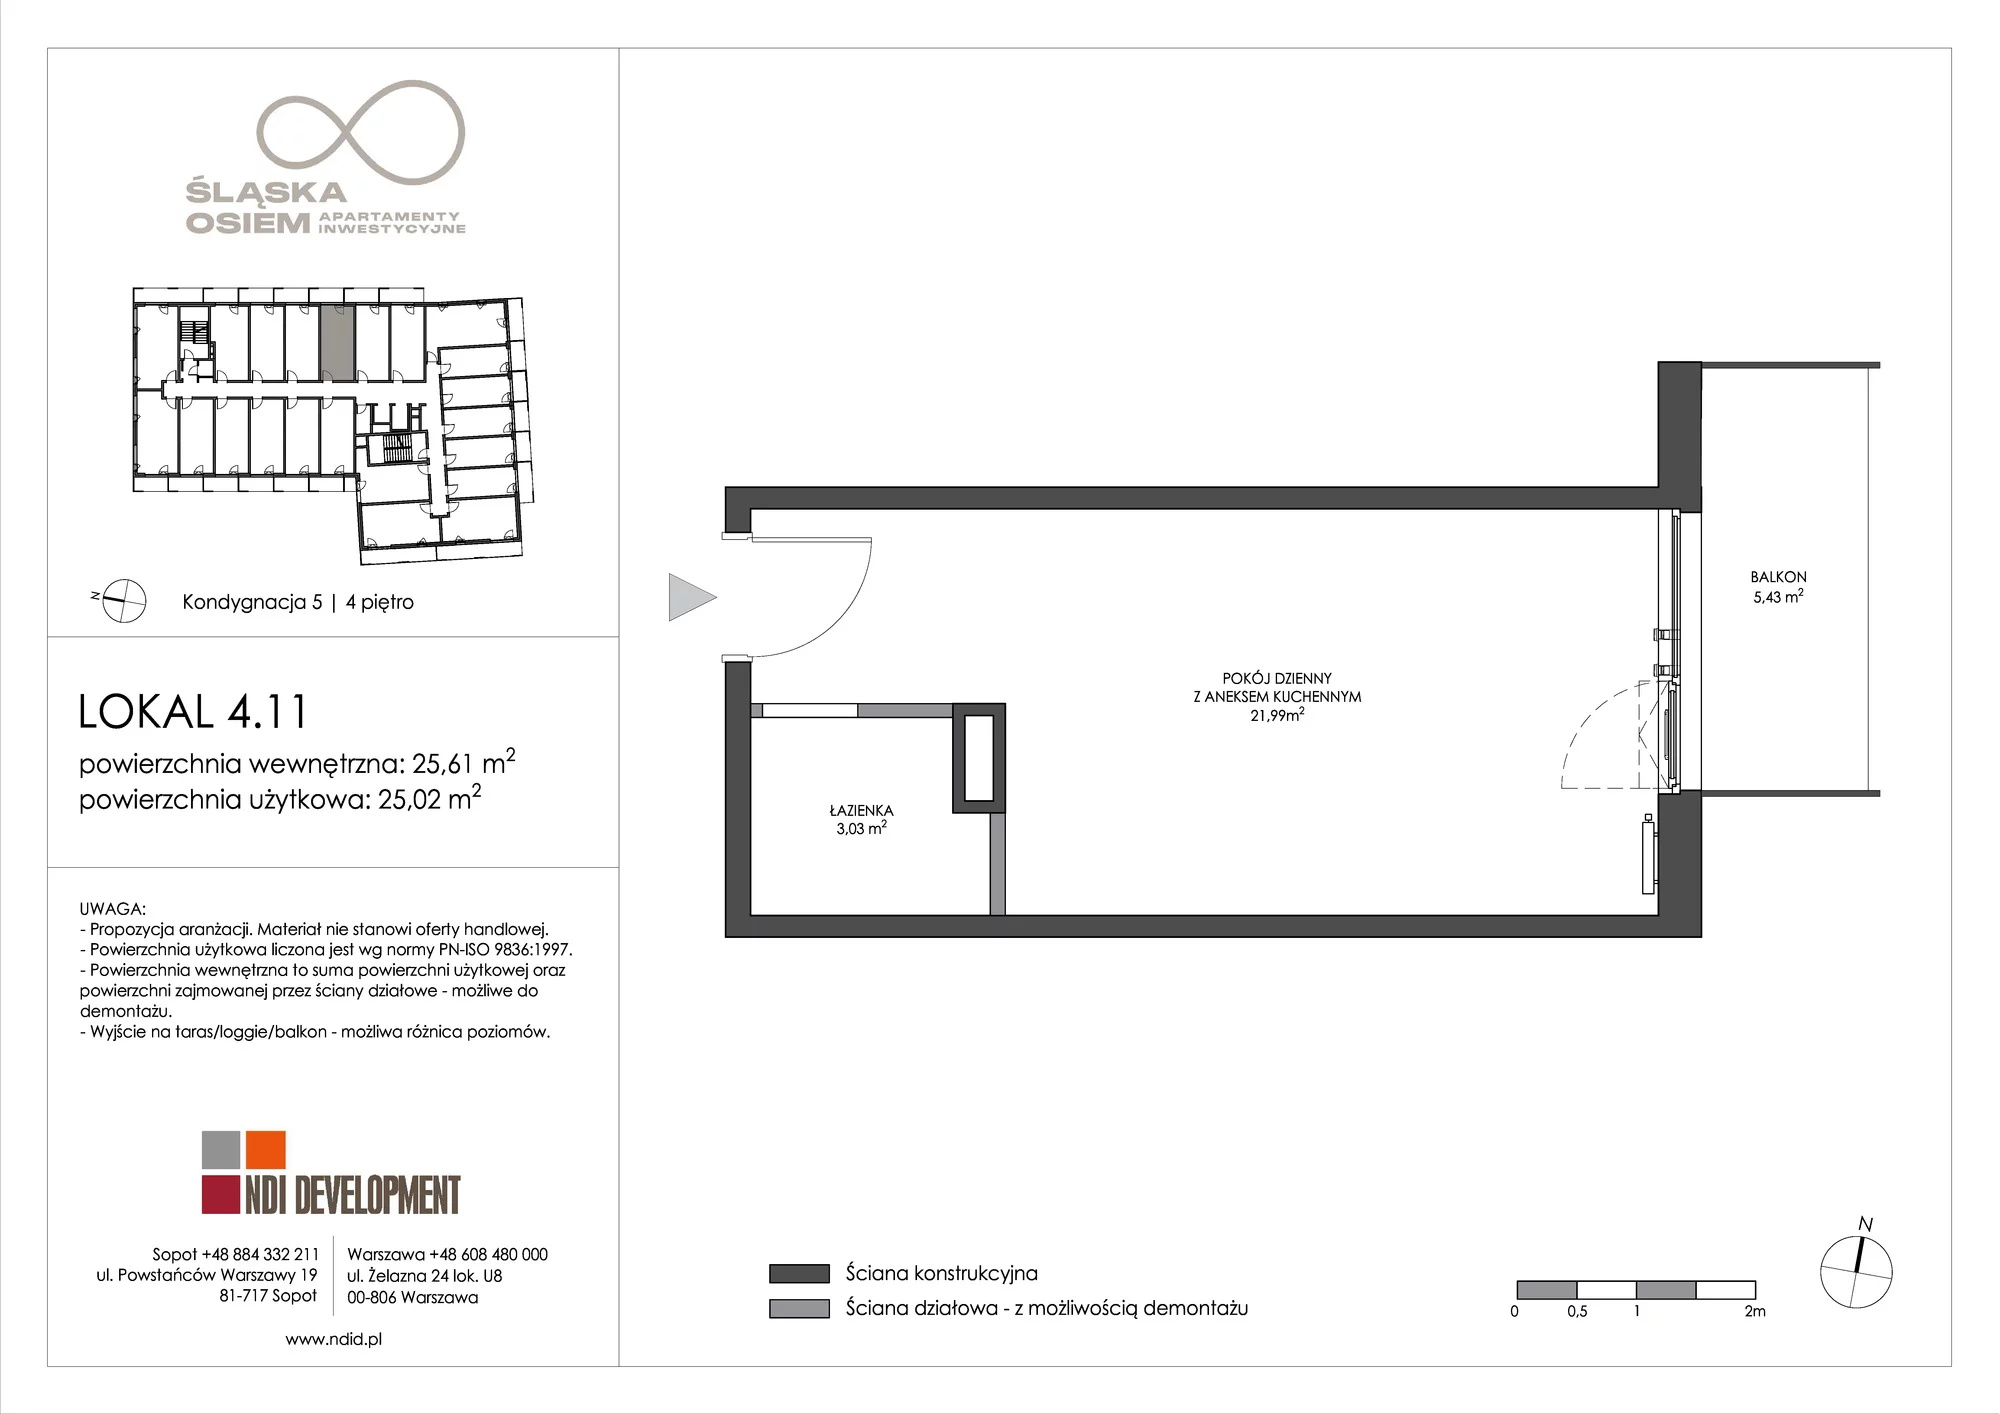 Apartament inwestycyjny 25,61 m², piętro 4, oferta nr 4.11, Śląska Osiem, Gdańsk, Przymorze, ul. Śląska 8